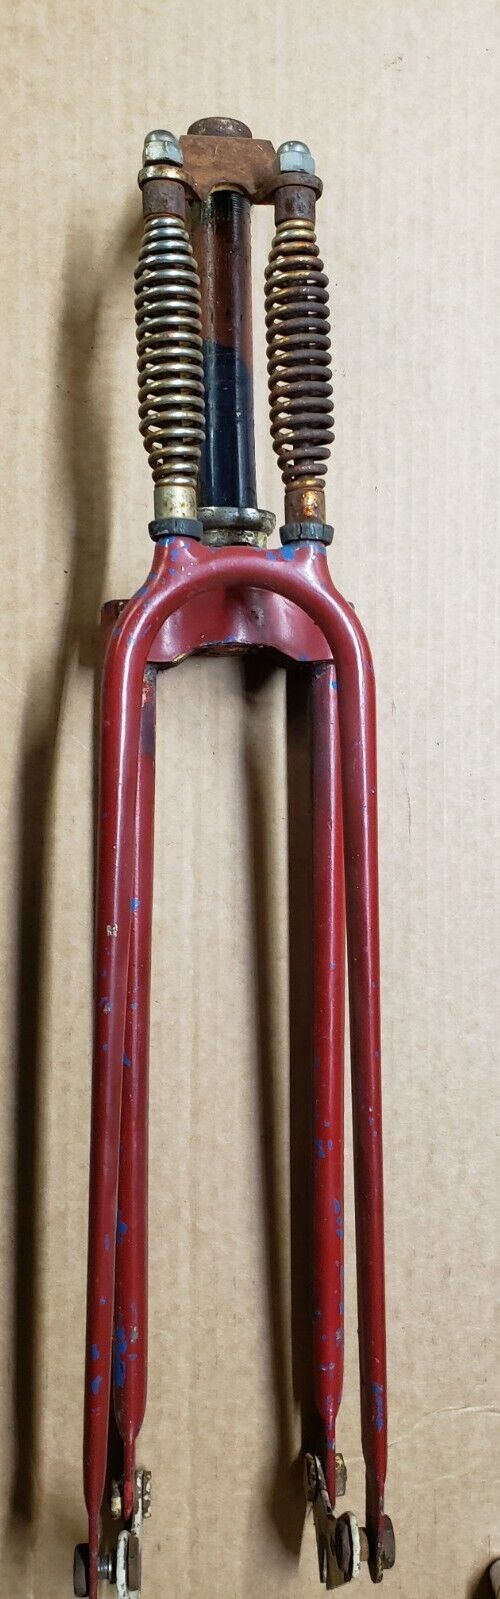 Vintage Monarch Bicycle Springer Fork